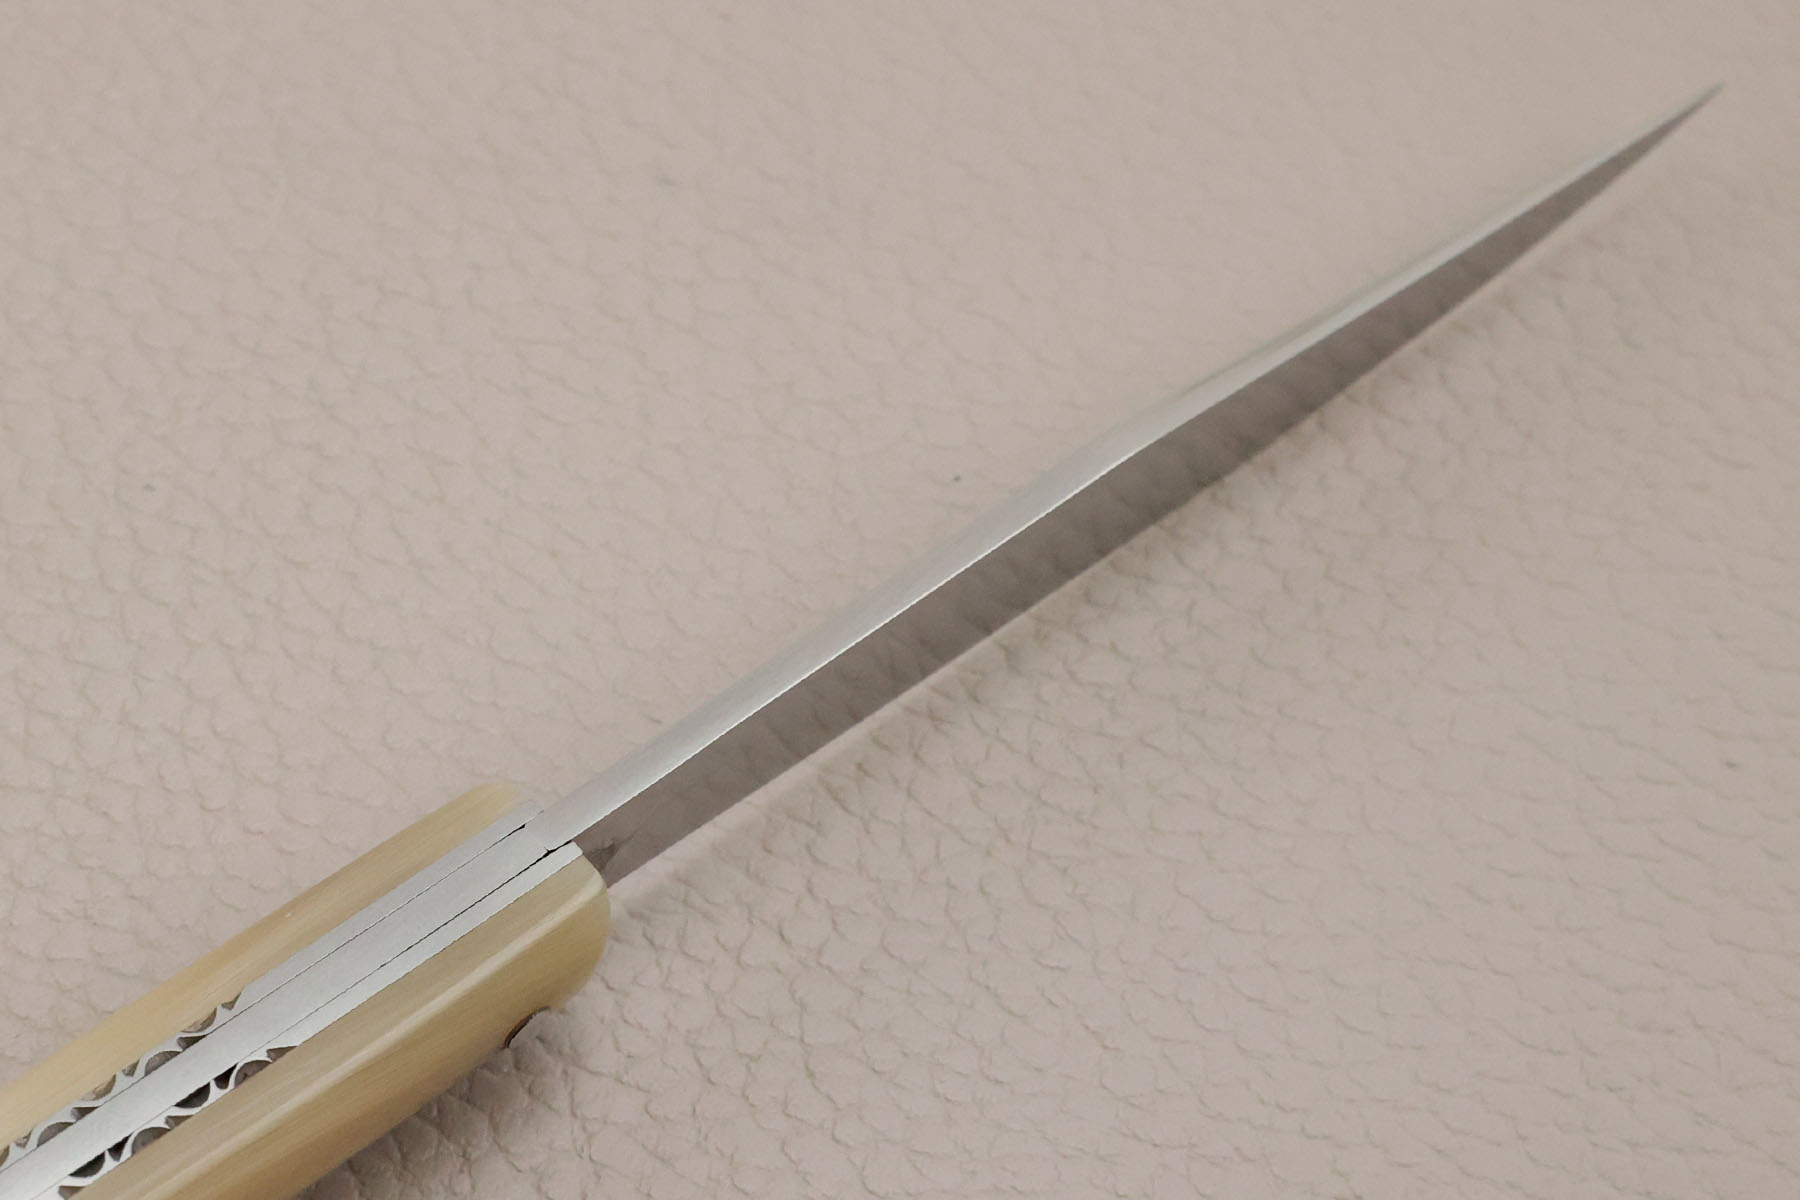 Couteau pliant de Robin Forissier modèle Le Chiloé - corne de zébu